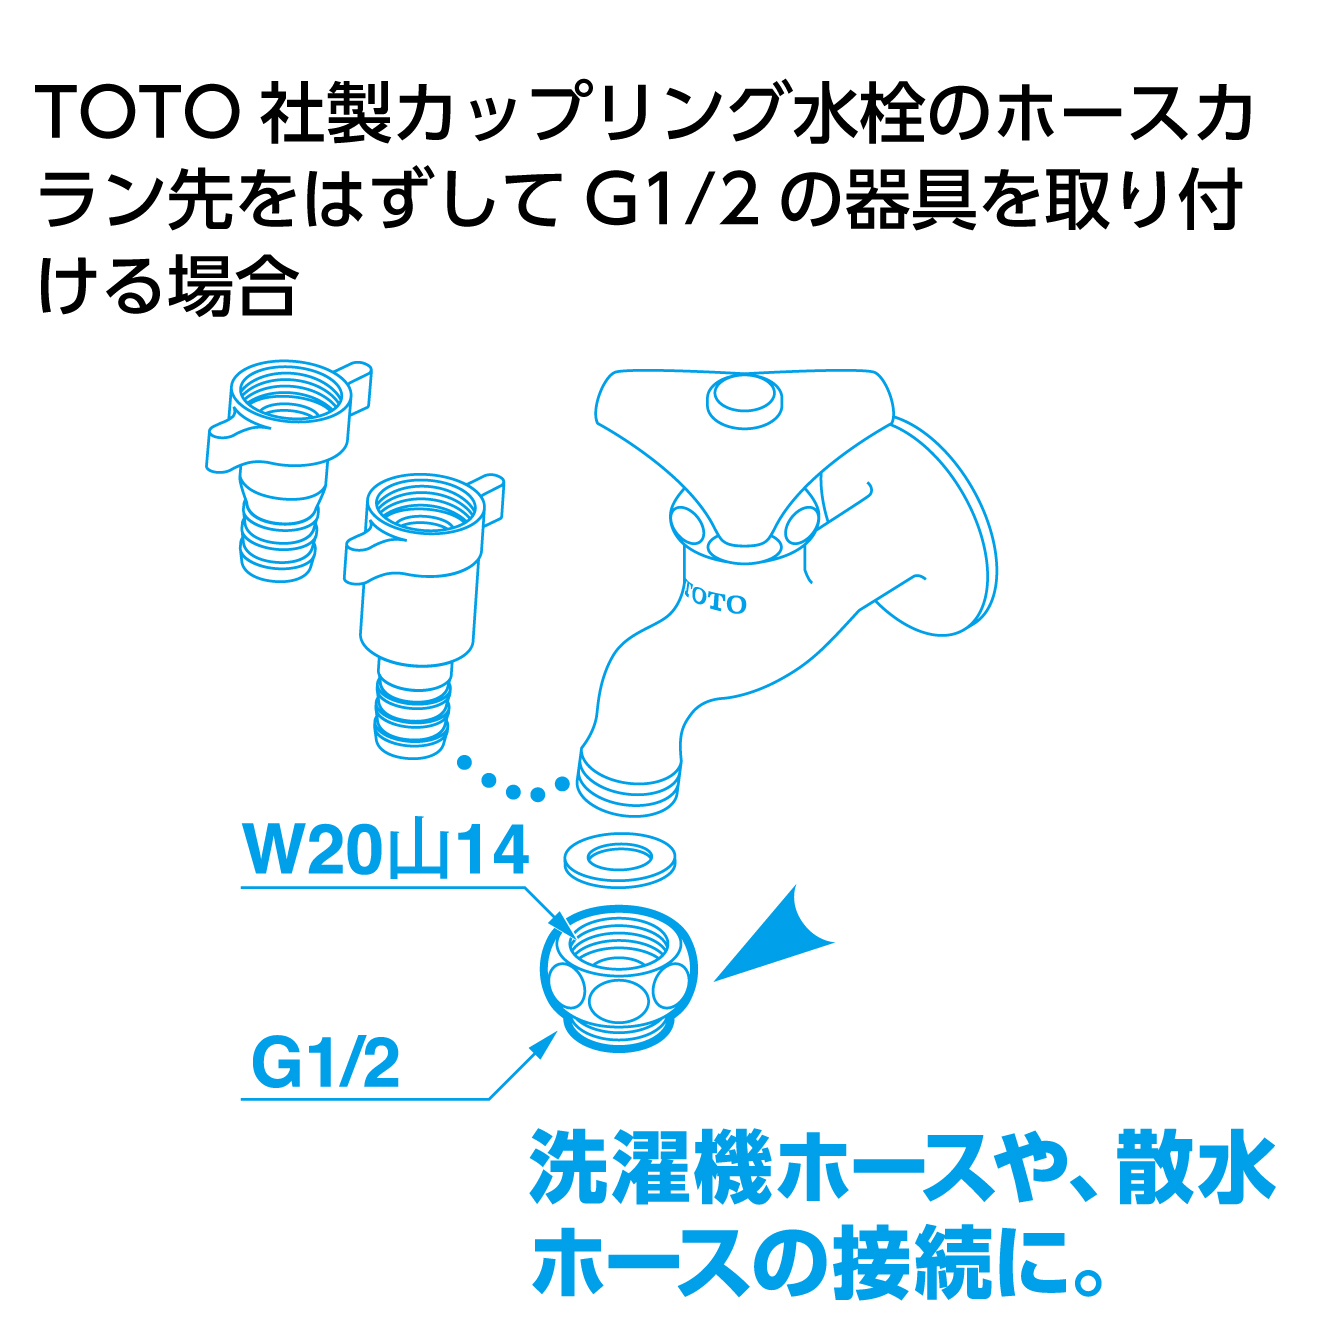 TOTO社製のカップリング水栓にG1/2の器具を付けたいとき